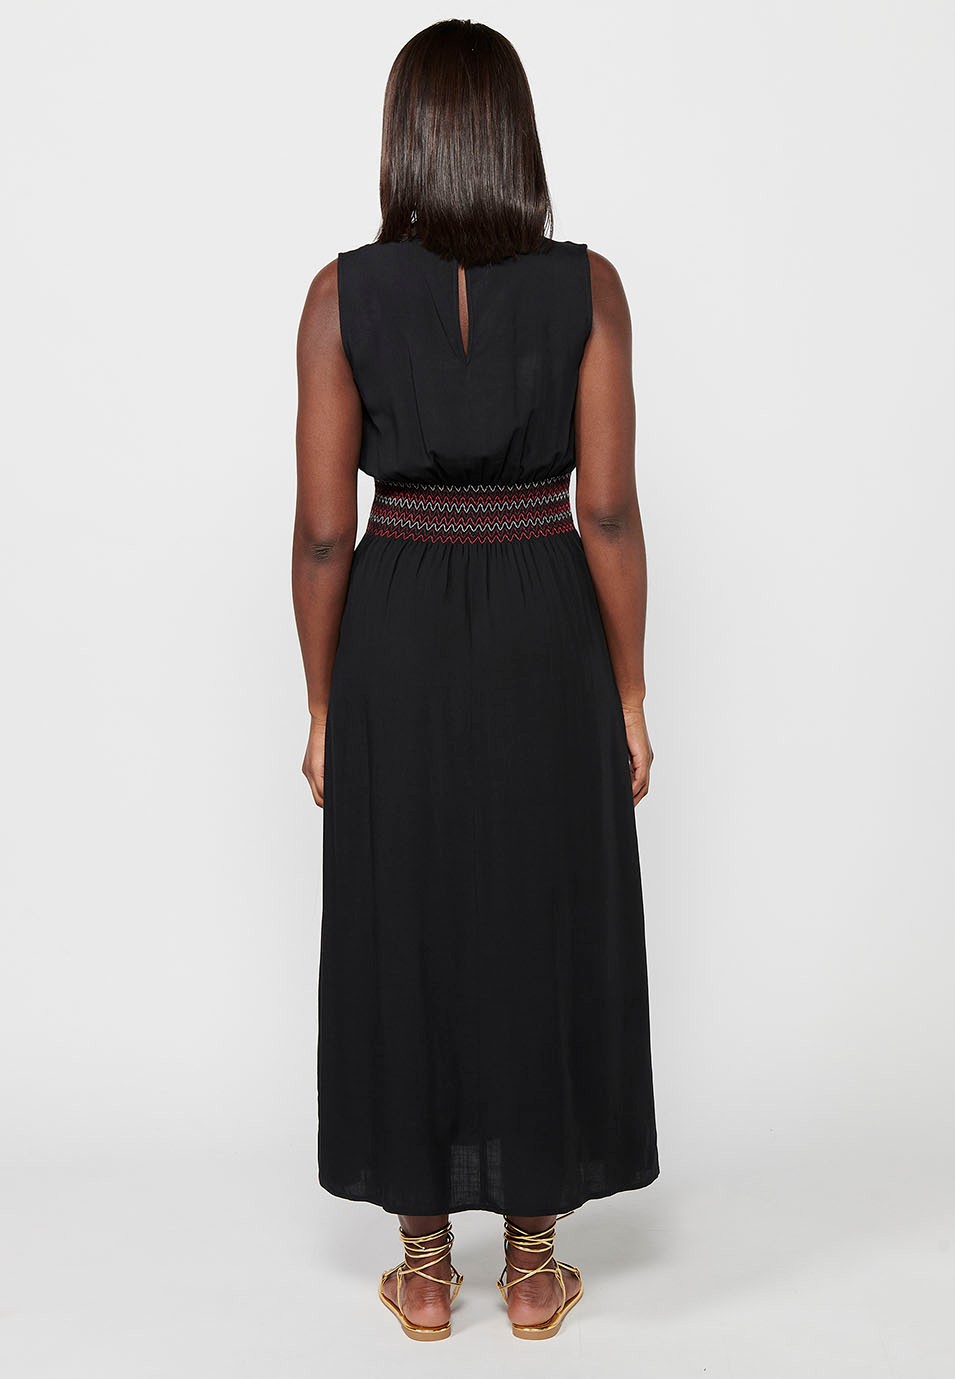 Robe longue sans manches, décolleté en V, taille caoutchoutée, coloris noir pour femme